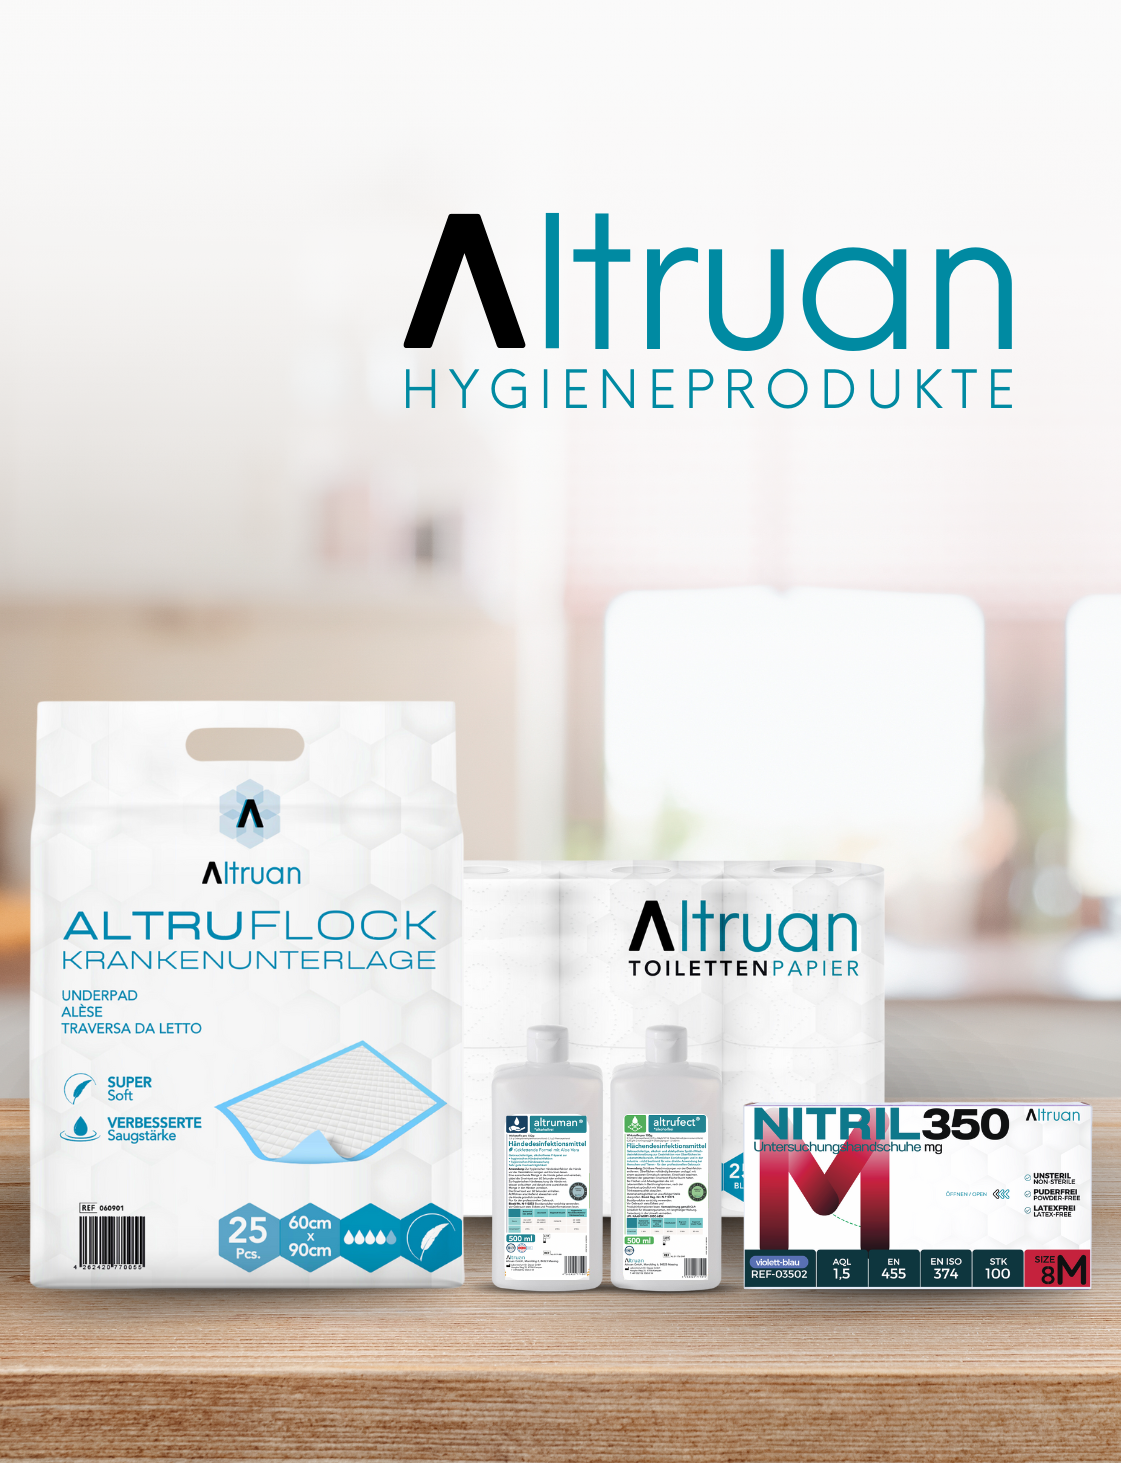 Ein Produktbild mit Hygieneprodukten von Altruan. Enthalten sind eine Packung Unterlagen, Toilettenpapierrollen, eine Schachtel Nitrilhandschuhe und zwei Flaschen Handdesinfektionsmittel. Das Altruan-Logo und „HYGIENEPRODUKTE“ sind deutlich über den Produkten zu sehen.